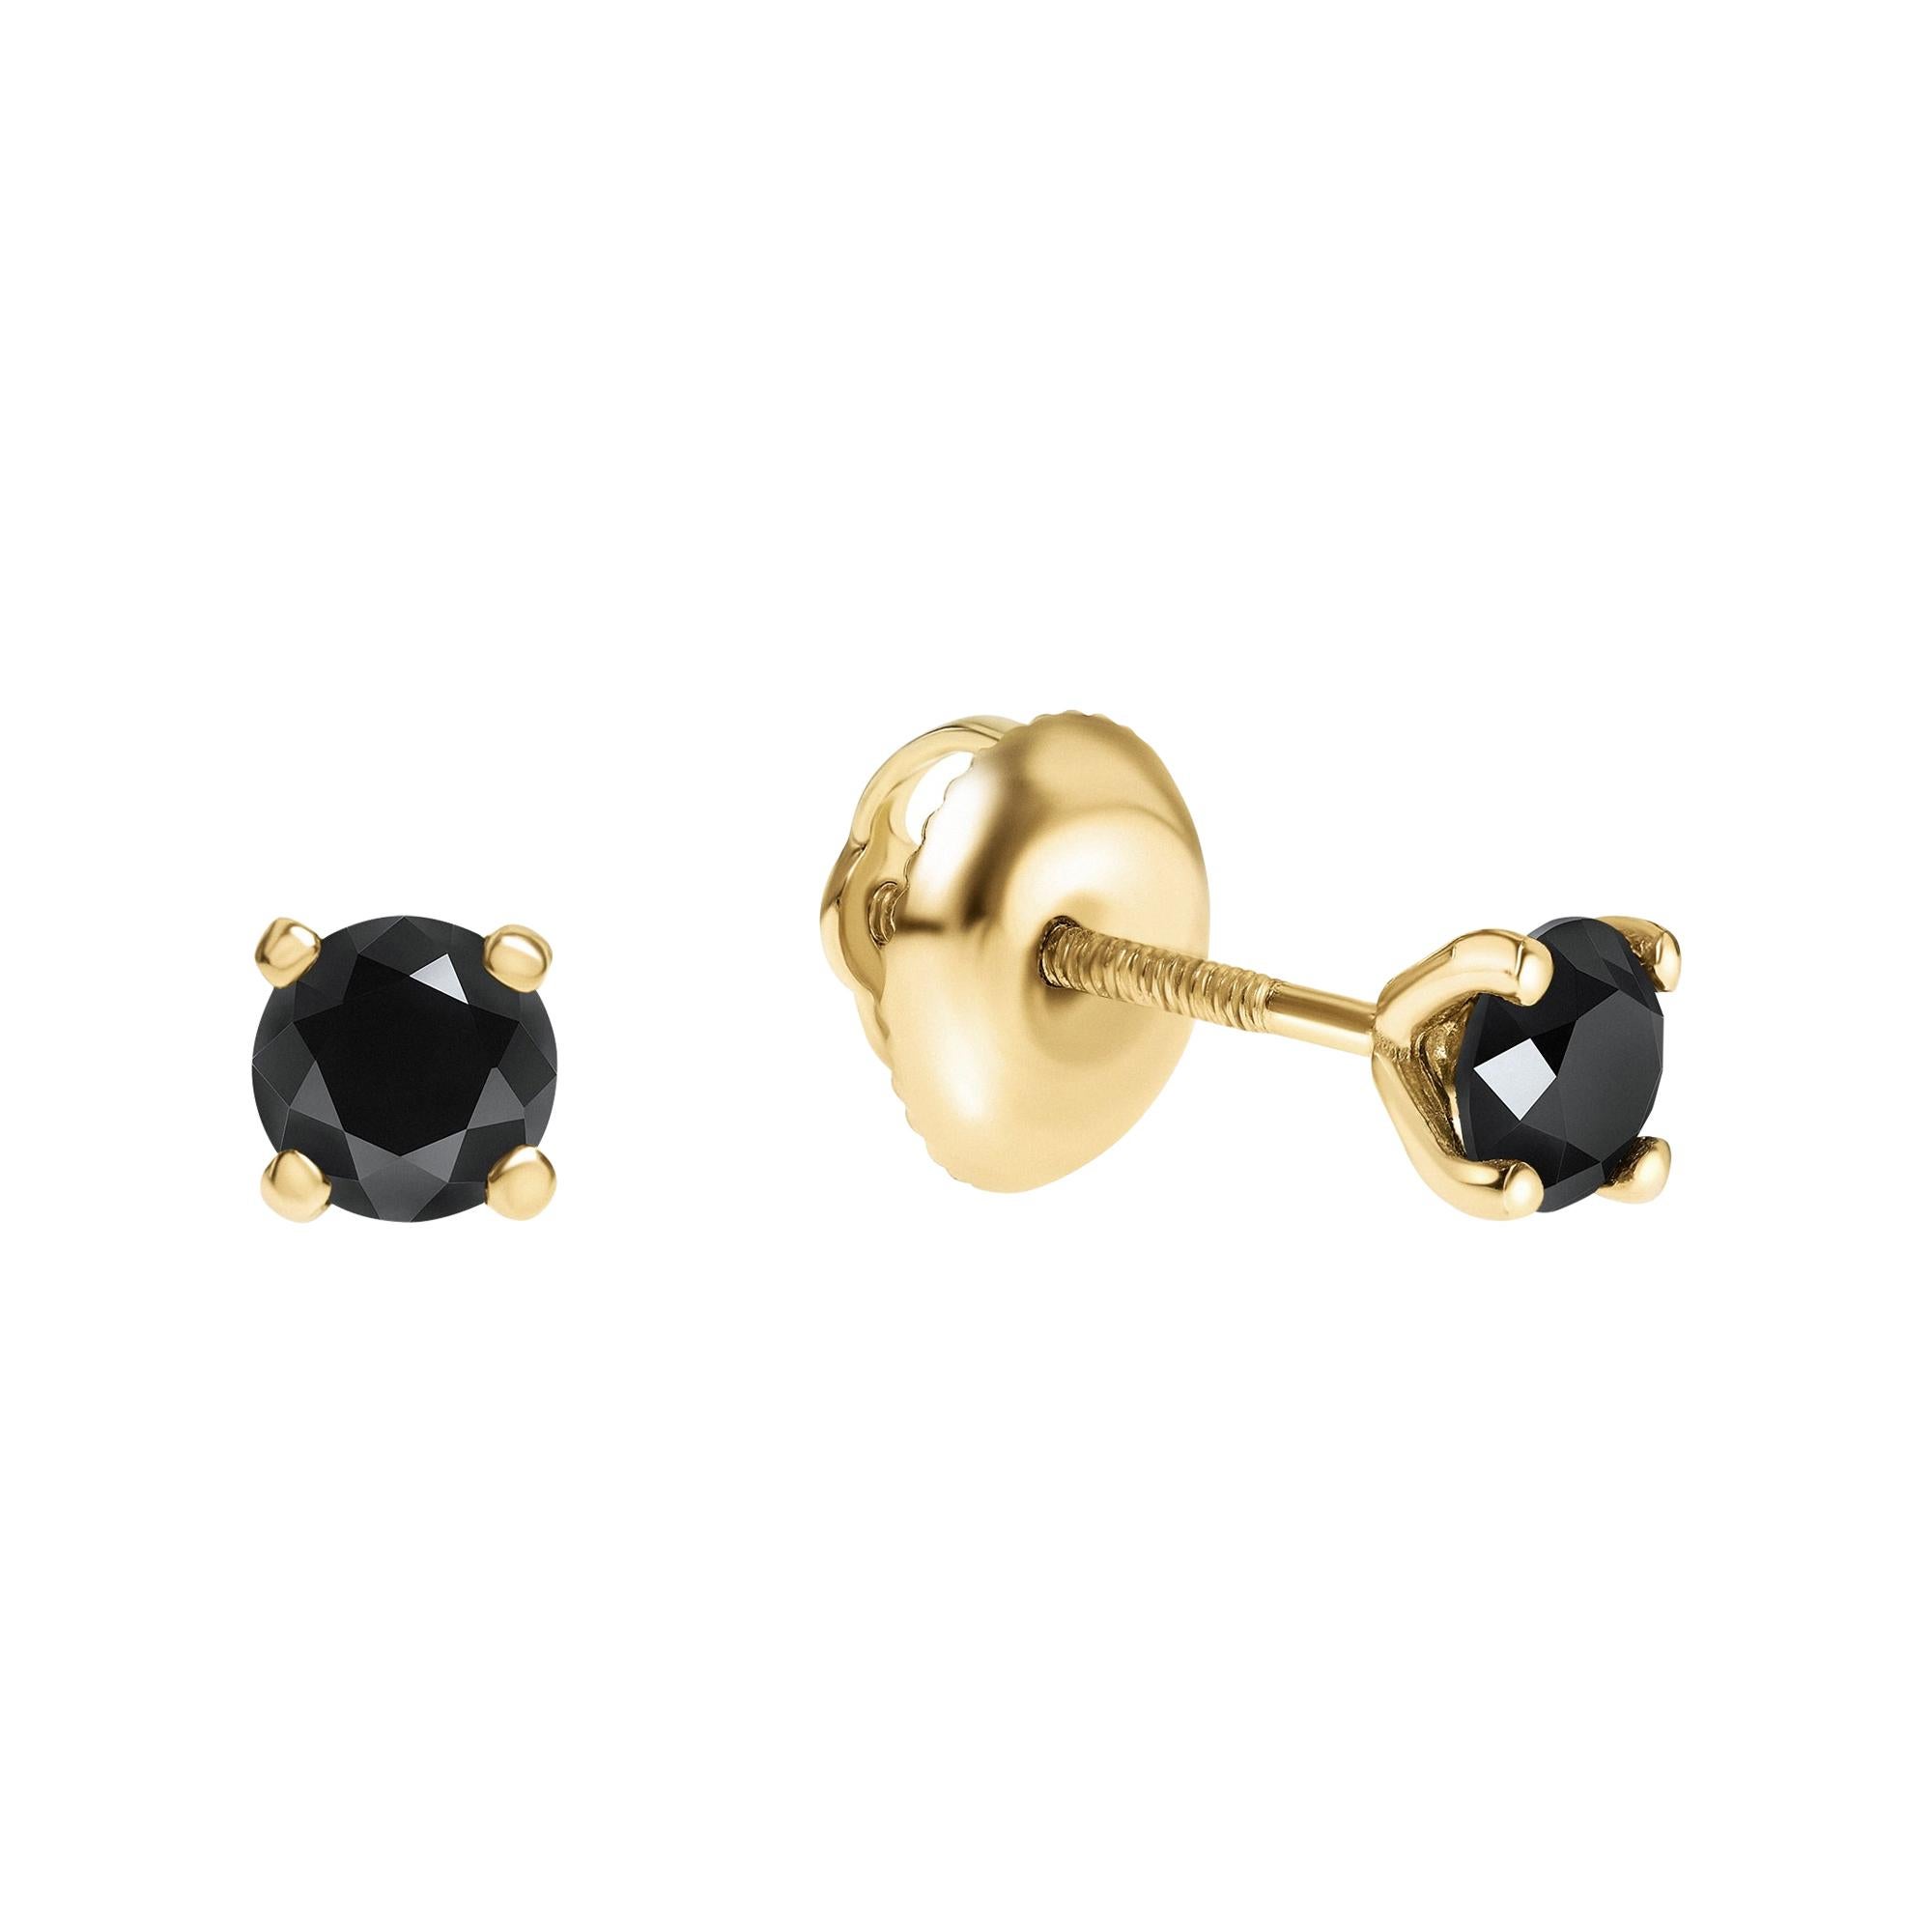 0.50 Carat Black Diamond Stud Earrings in 14 Karat Yellow Gold - Shlomit Rogel For Sale